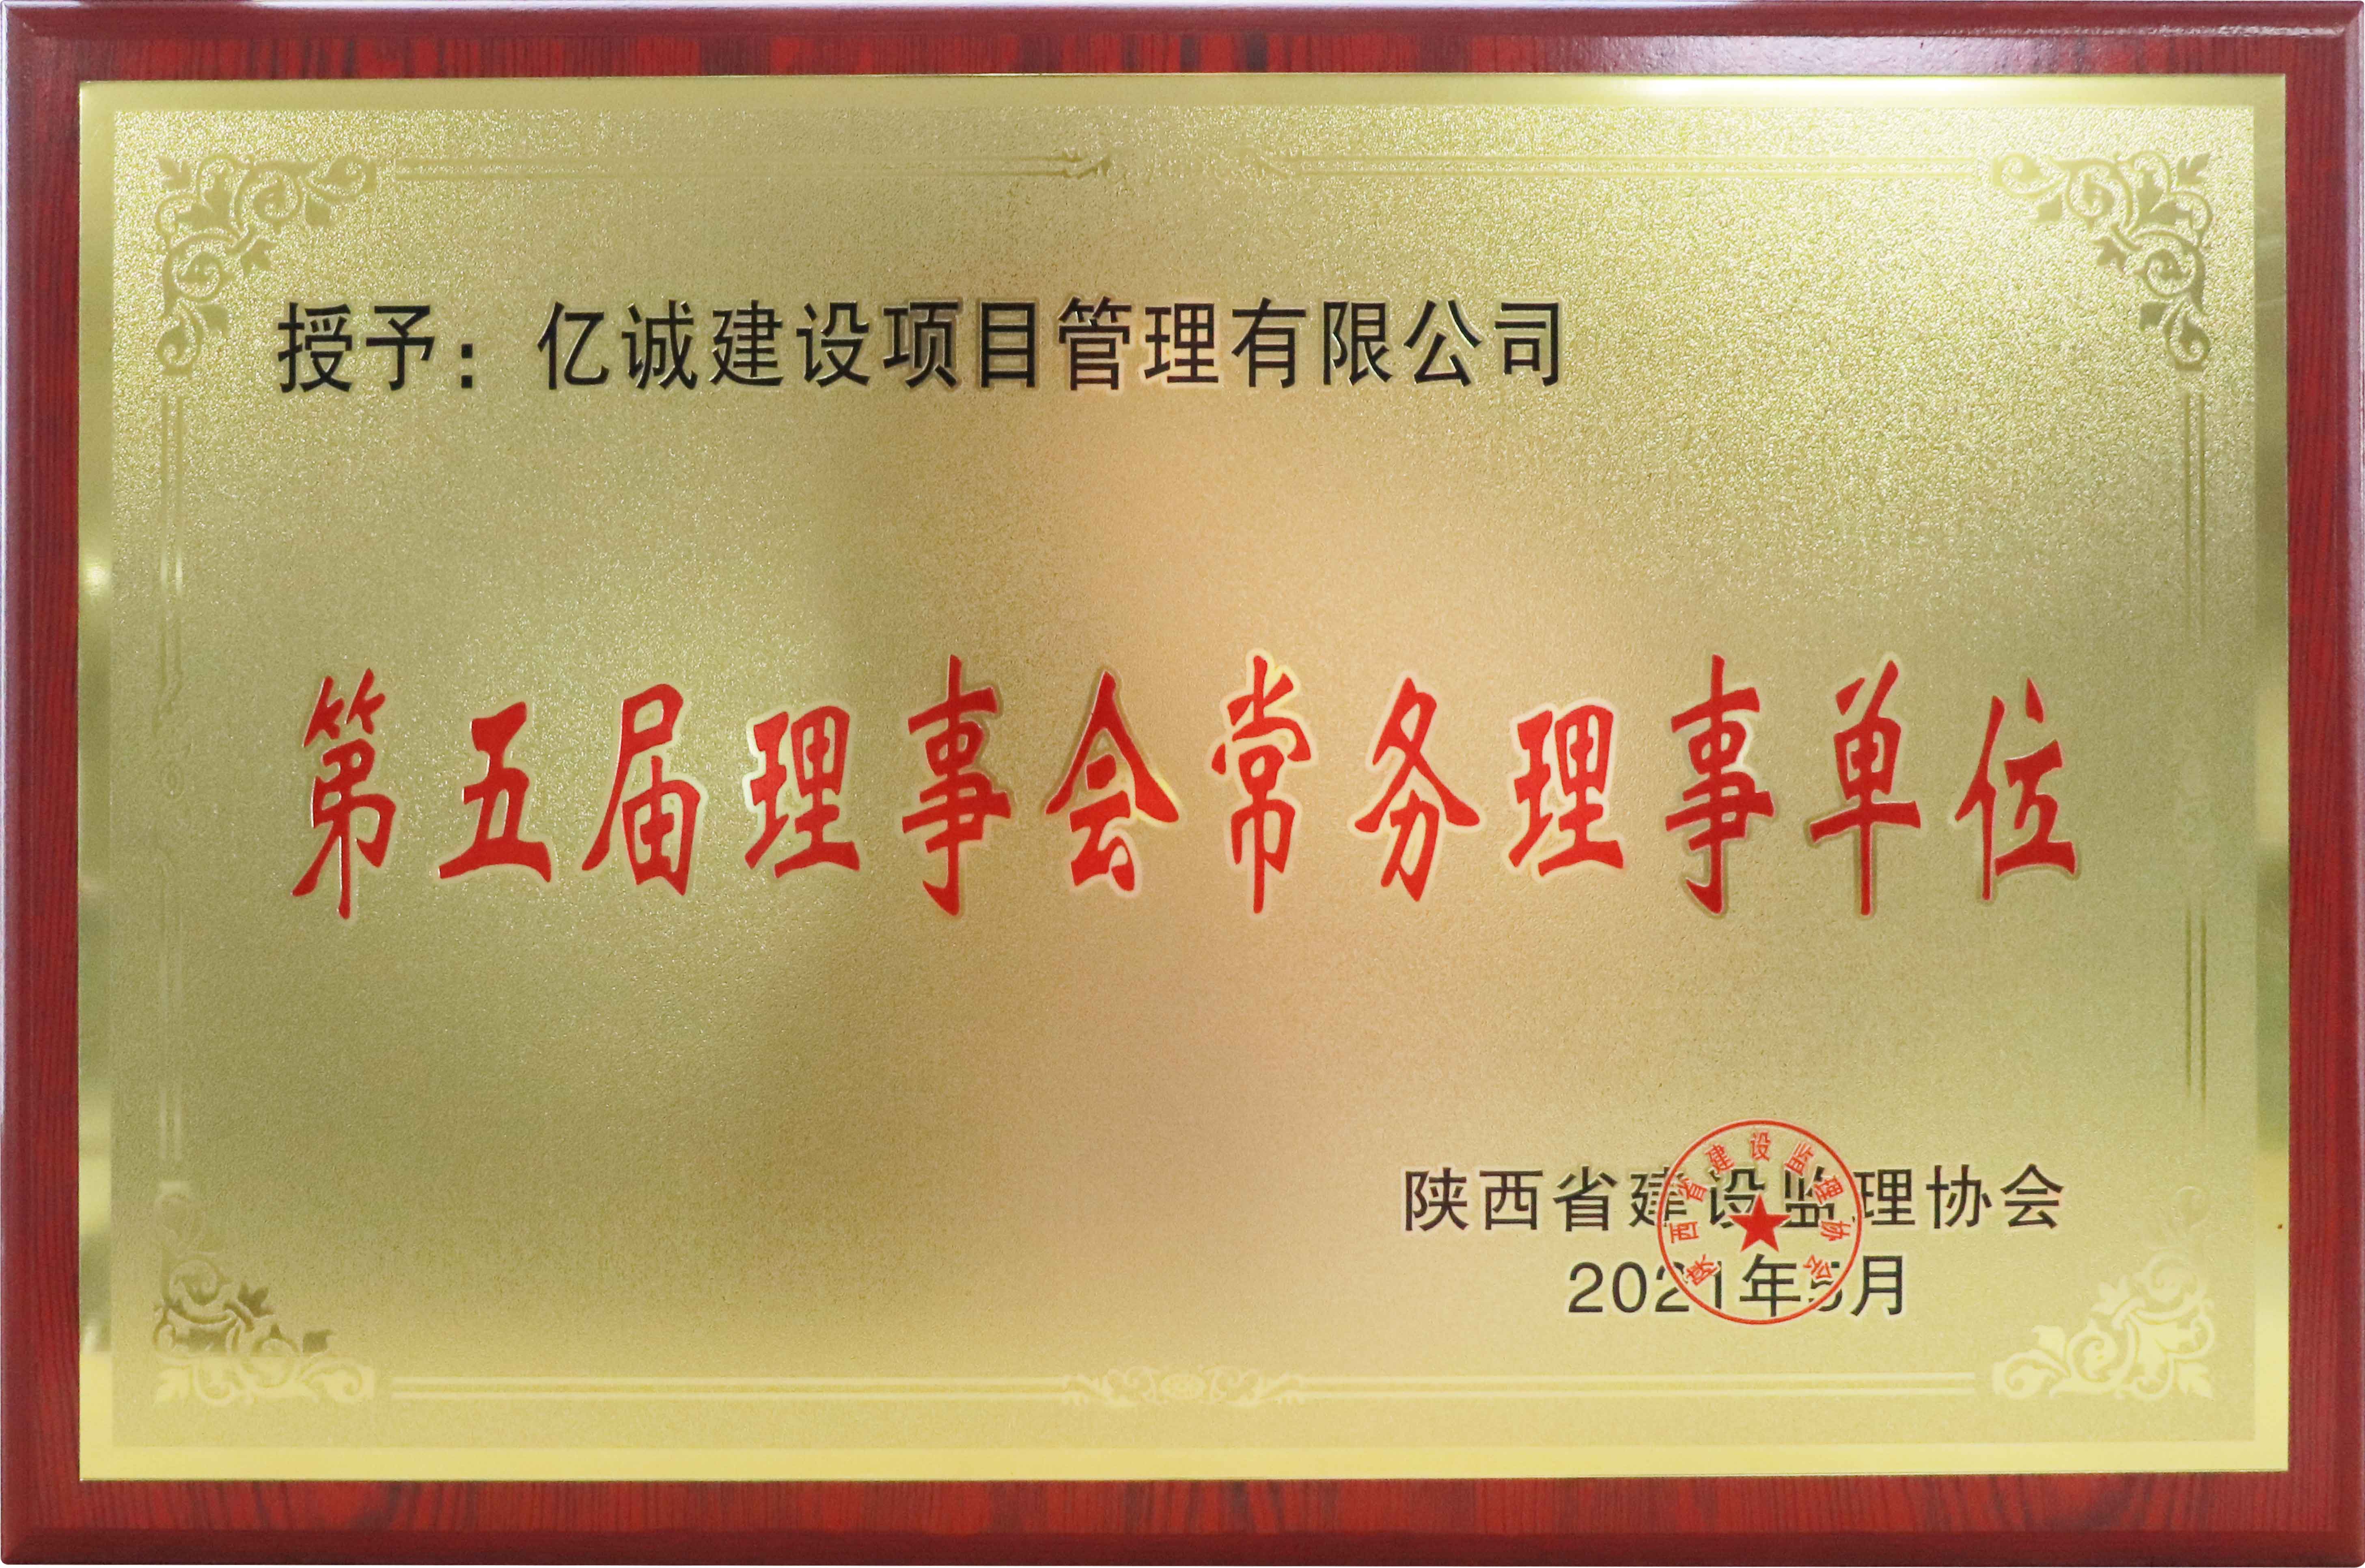 陜西省建設監理協會第五屆理事會常務理事單位